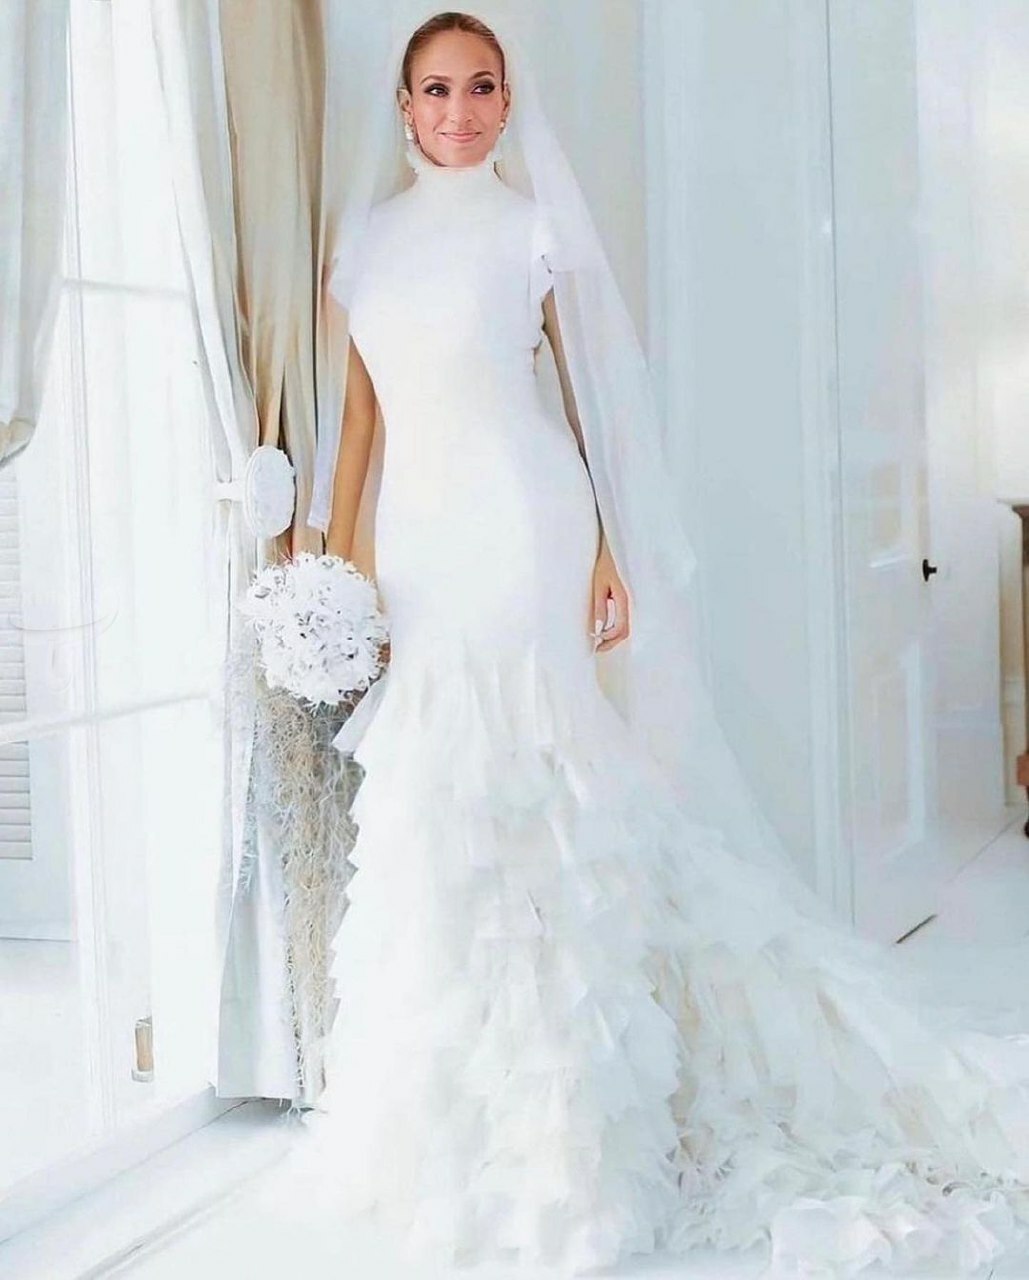 تصـاویر رسمی از مراسم ازدواج جنیفر لوپز با ۳ مدل لباس عروس